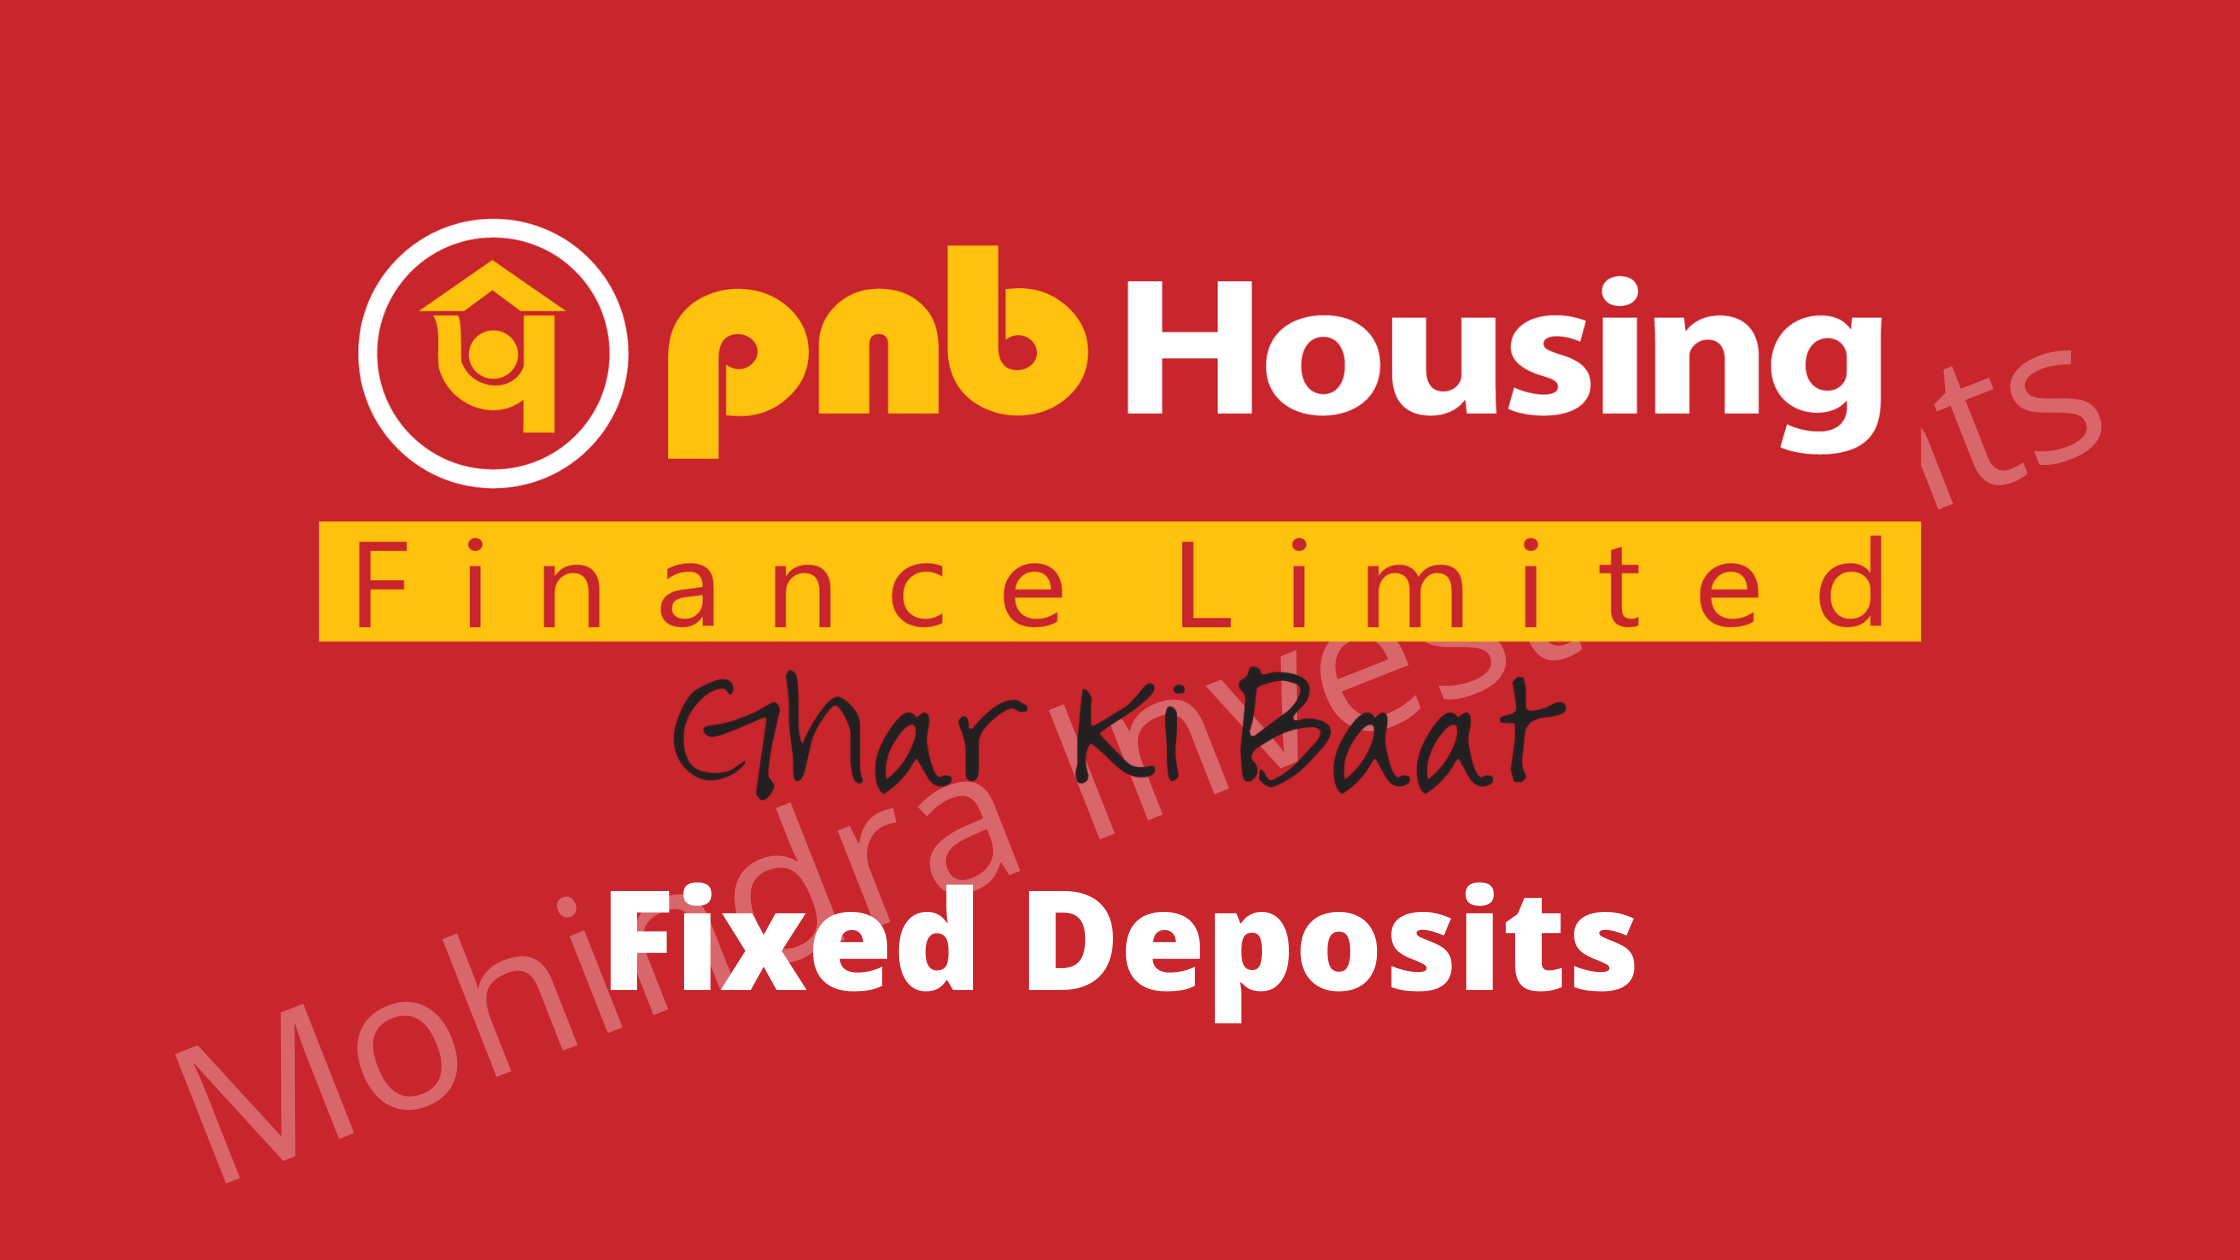 pnb-housing-finance-company-fixed-deposits-28-11-2020